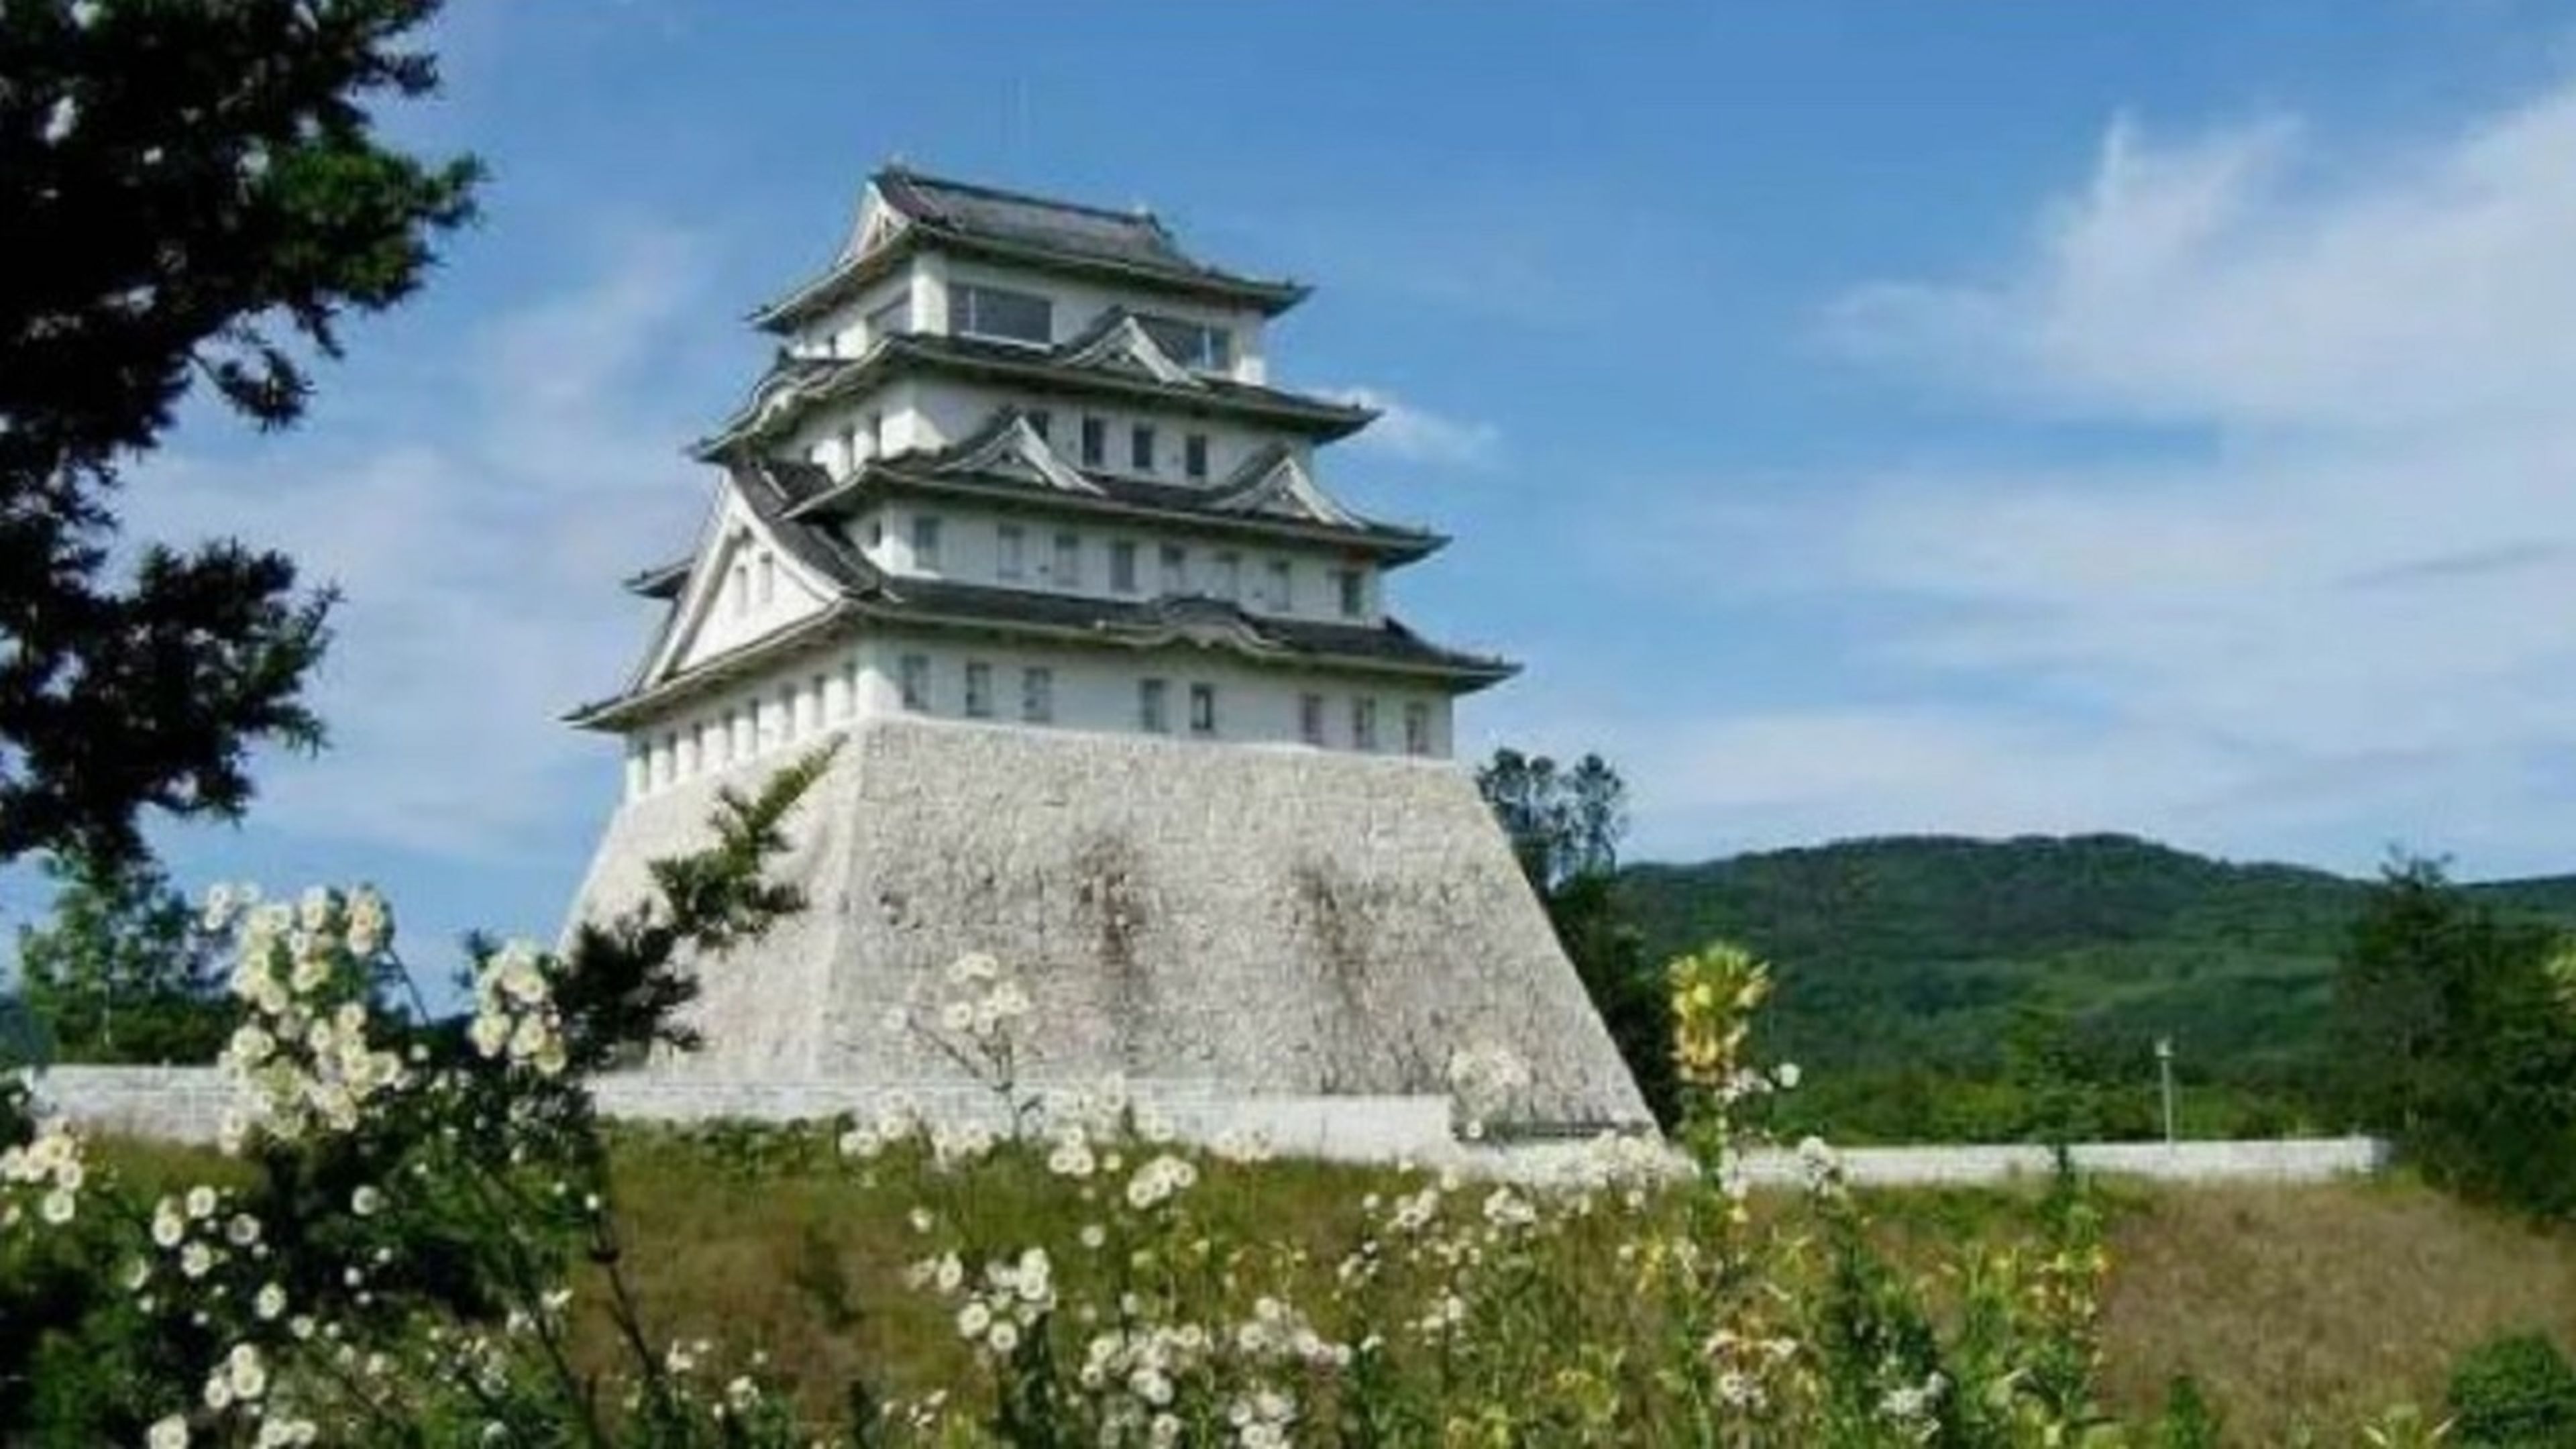 Se vende por 60.000 euros: así es el impresionante castillo japonés que puedes comprar por menos que una casa